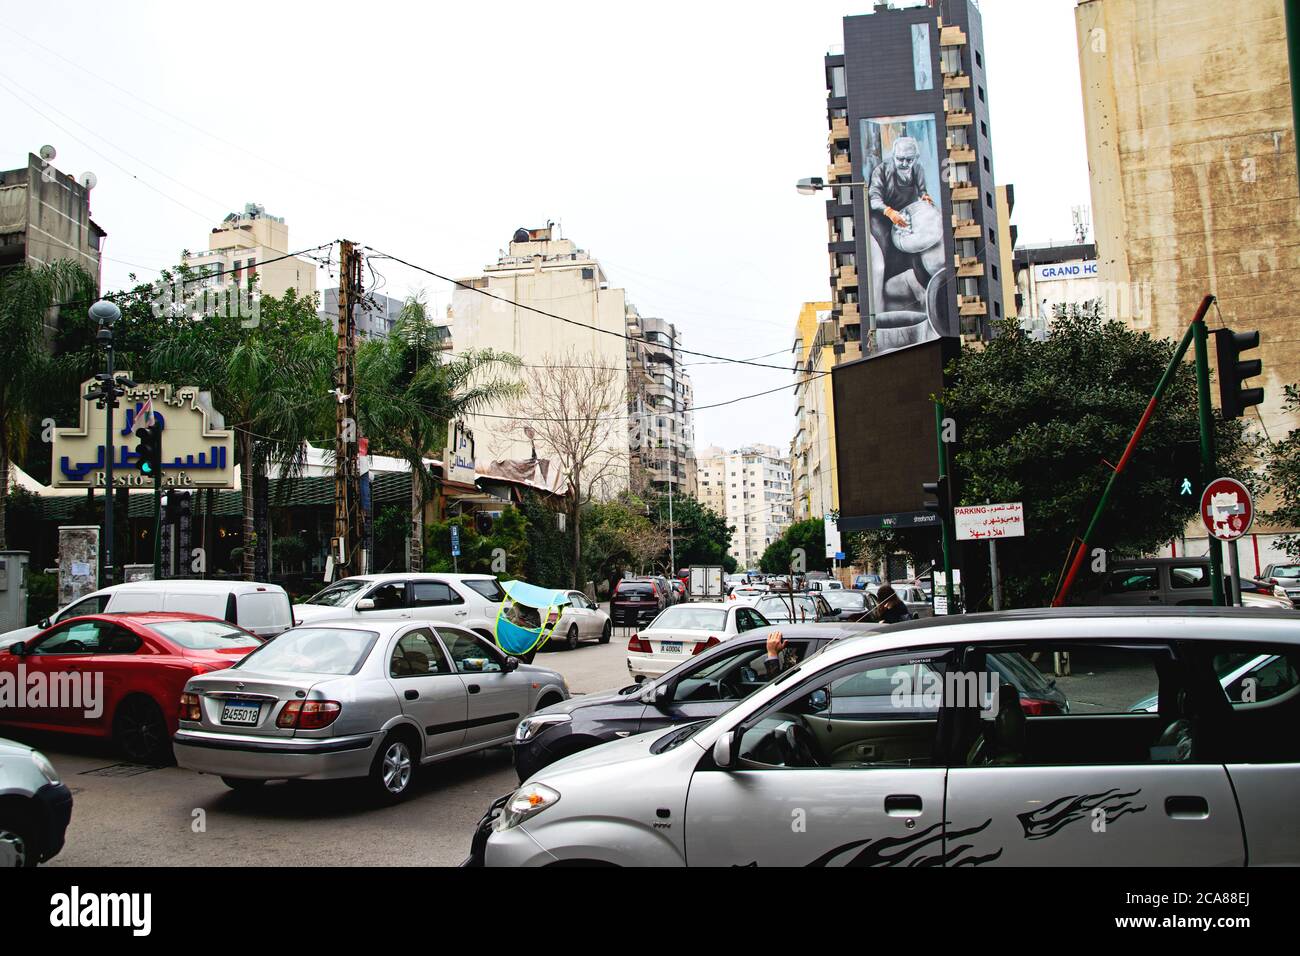 Ingorgo e caos in una strada nel centro di Beirut, Libano. Foto scattata a febbraio 20 2020. Foto Stock